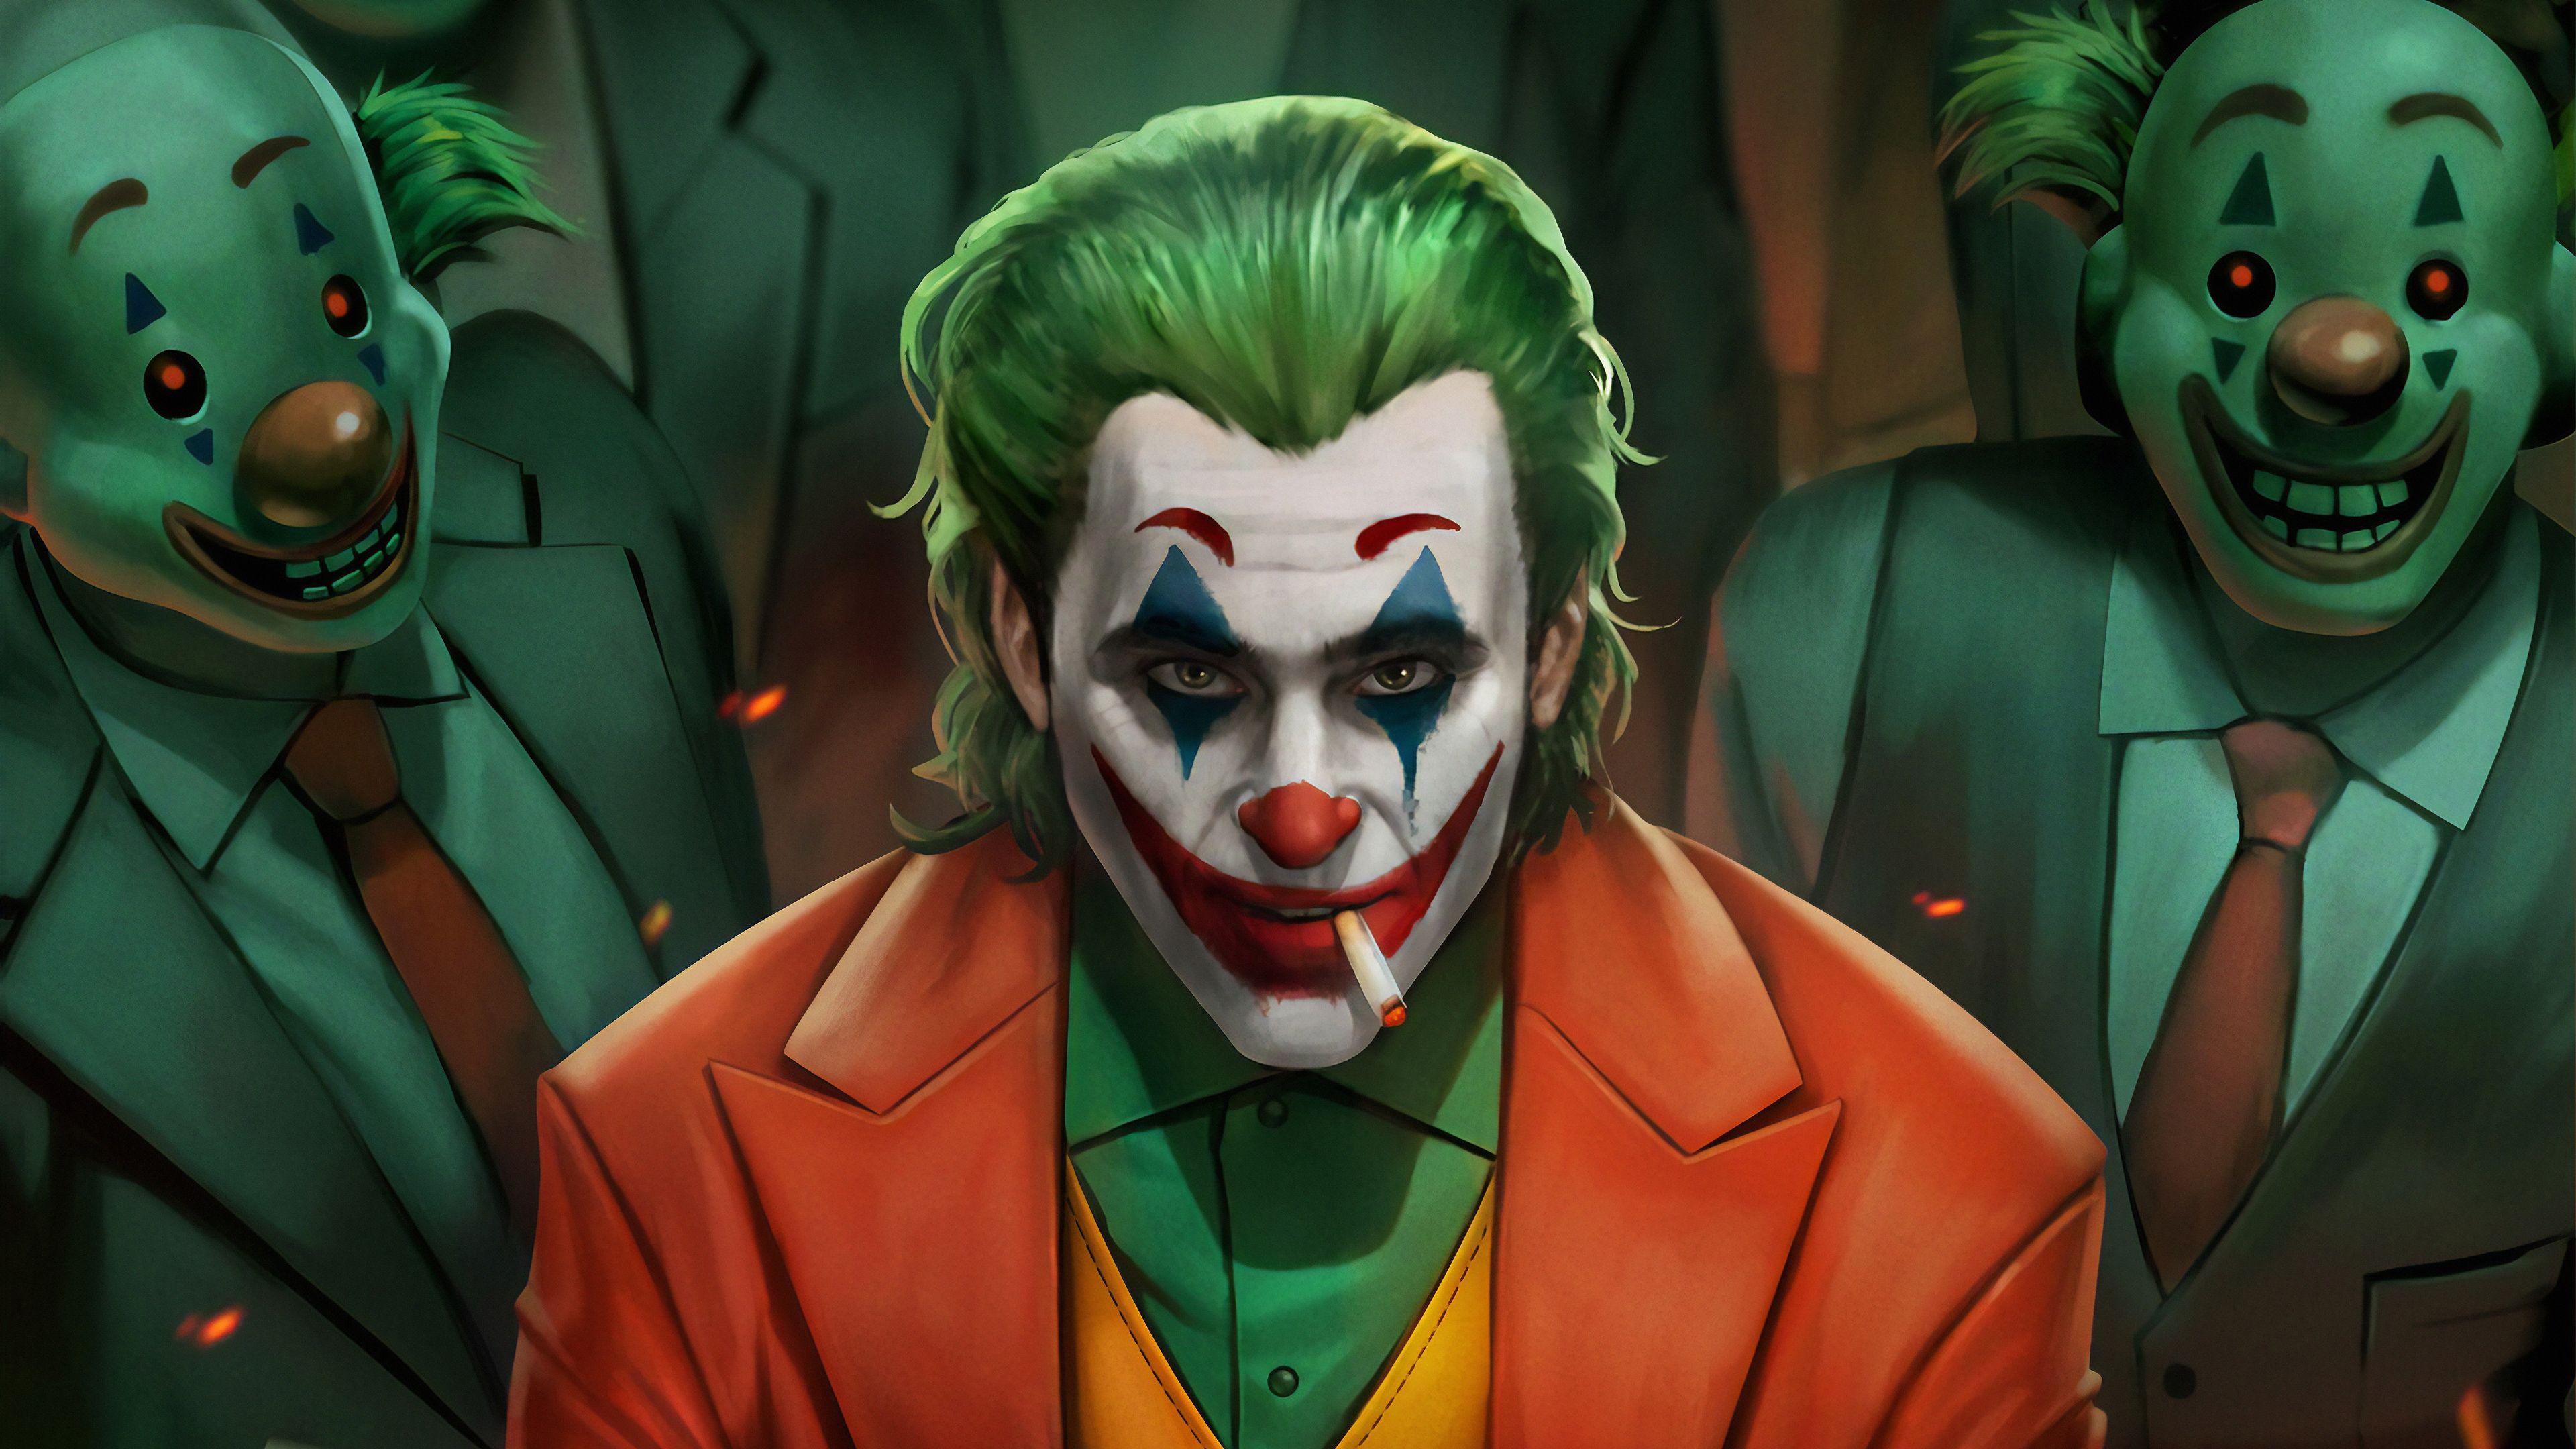 100+] Joker 2019 Wallpapers | Wallpapers.com